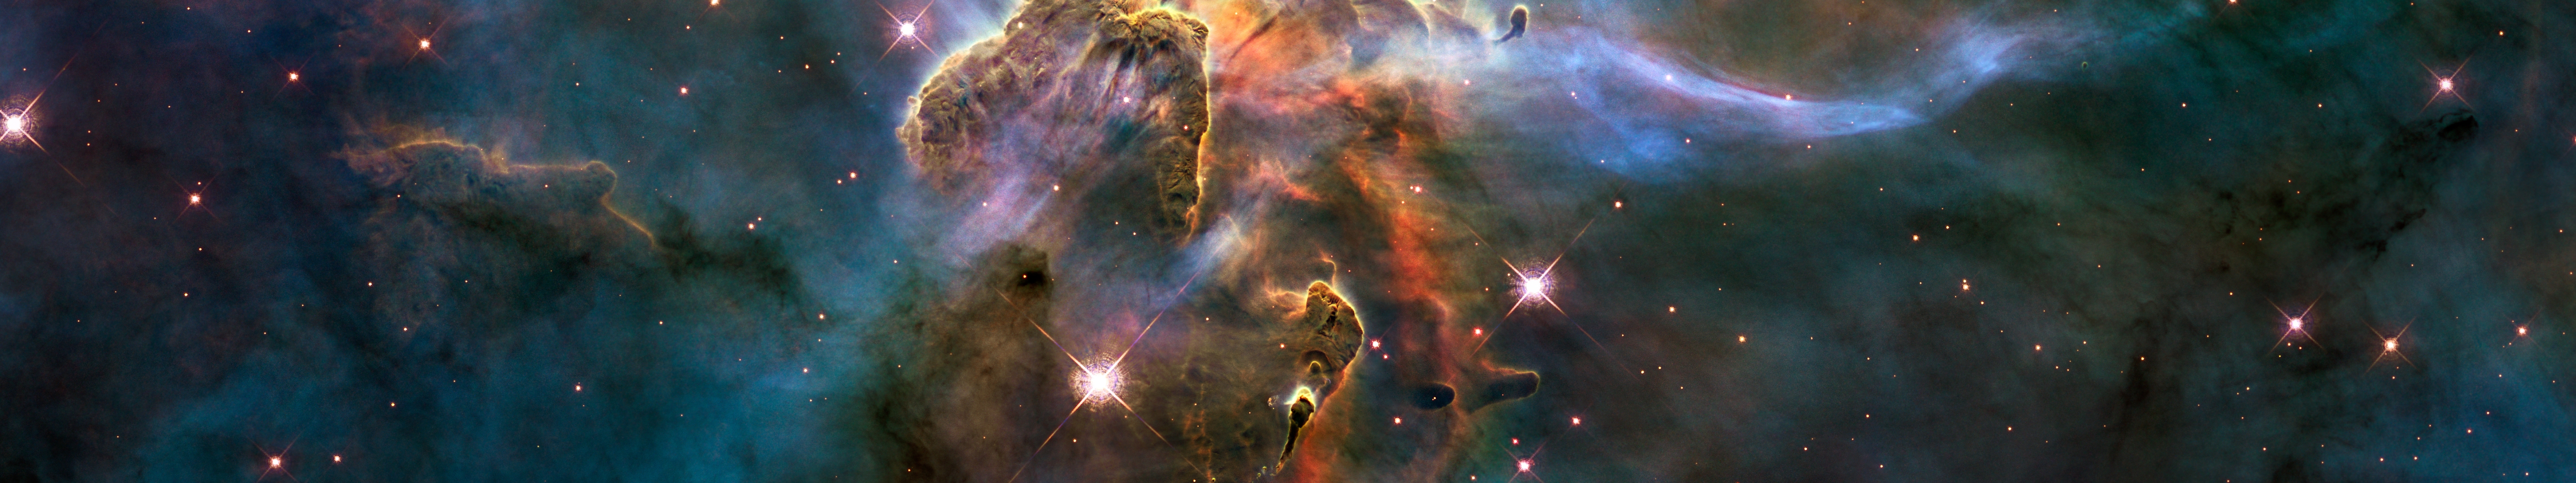 Bức ảnh của vũ trụ xanh lơ Nebula này là tuyệt đẹp. Tận hưởng sự trang trí của vũ trụ, với các màu sắc và hình dạng đa dạng nhất! Cảm nhận sự lãng mạn và tuyệt đẹp của vũ trụ, khi lúc này tất cả chúng ta đang rơi vào cùng một khung hình.